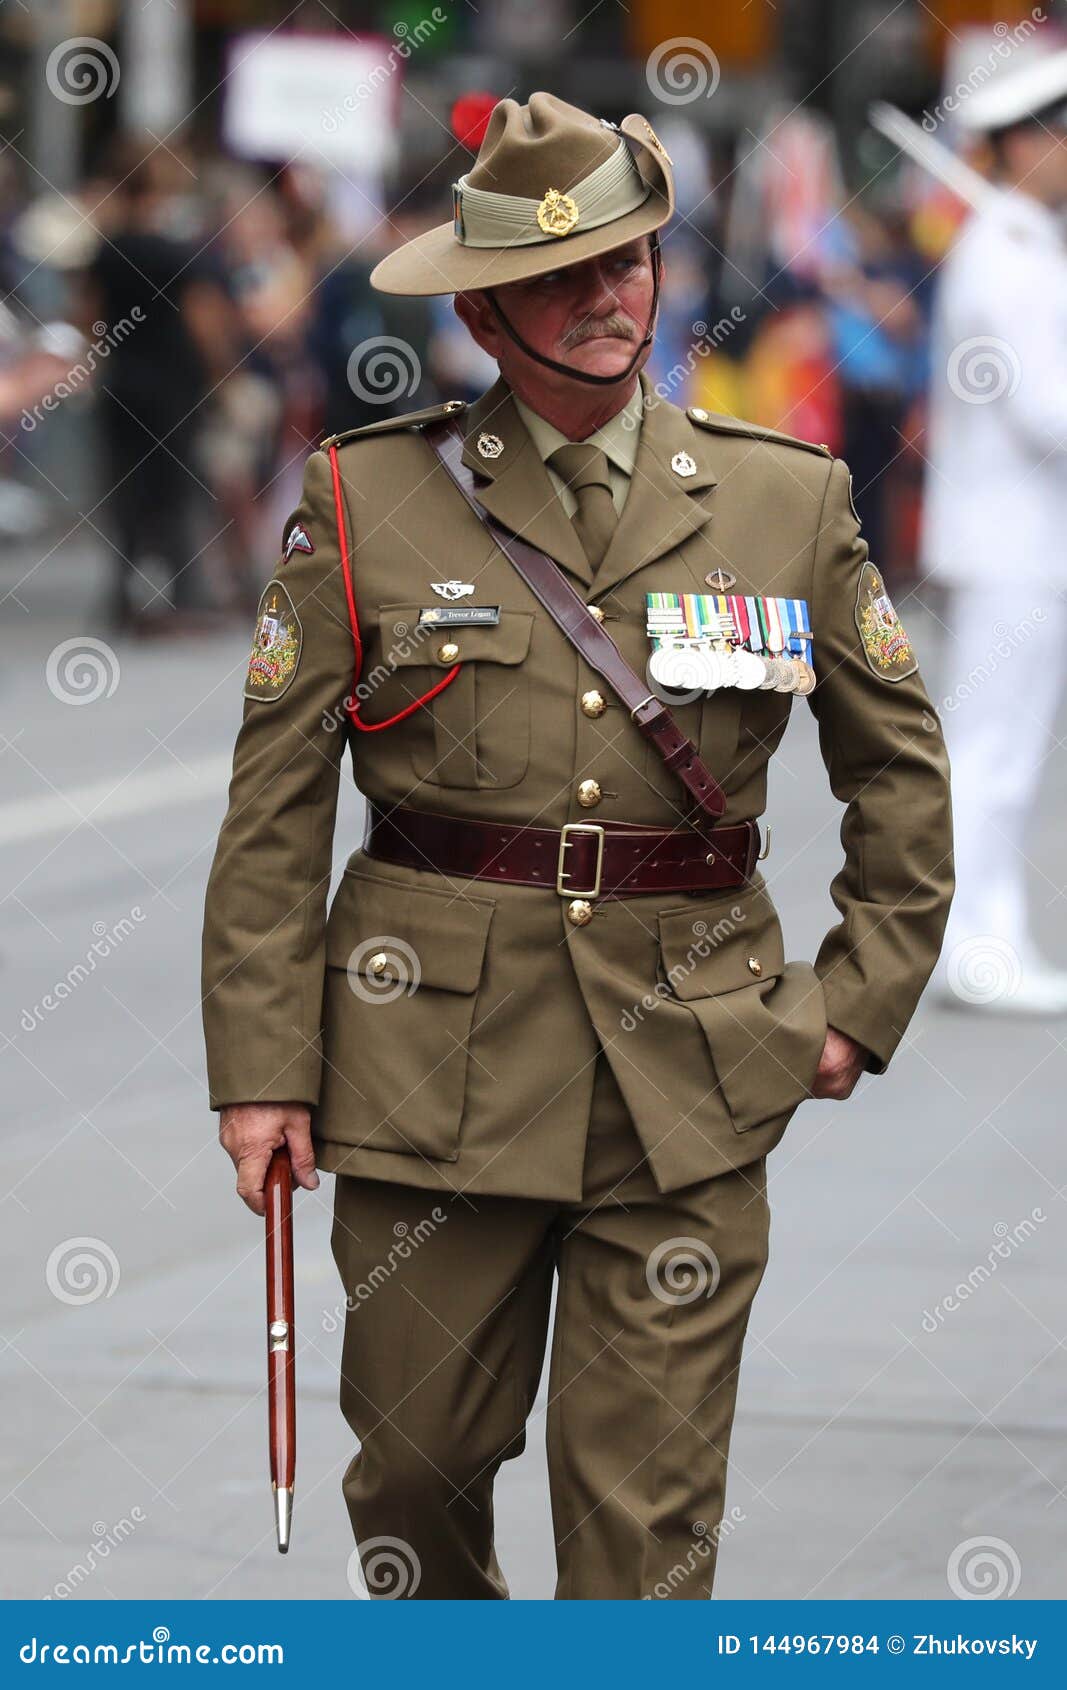 Ødelæggelse Plantation frakke Australian Army Officers Participate at 2019 Australia Day Parade in  Melbourne Editorial Stock Image - Image of australian, officers: 144967984